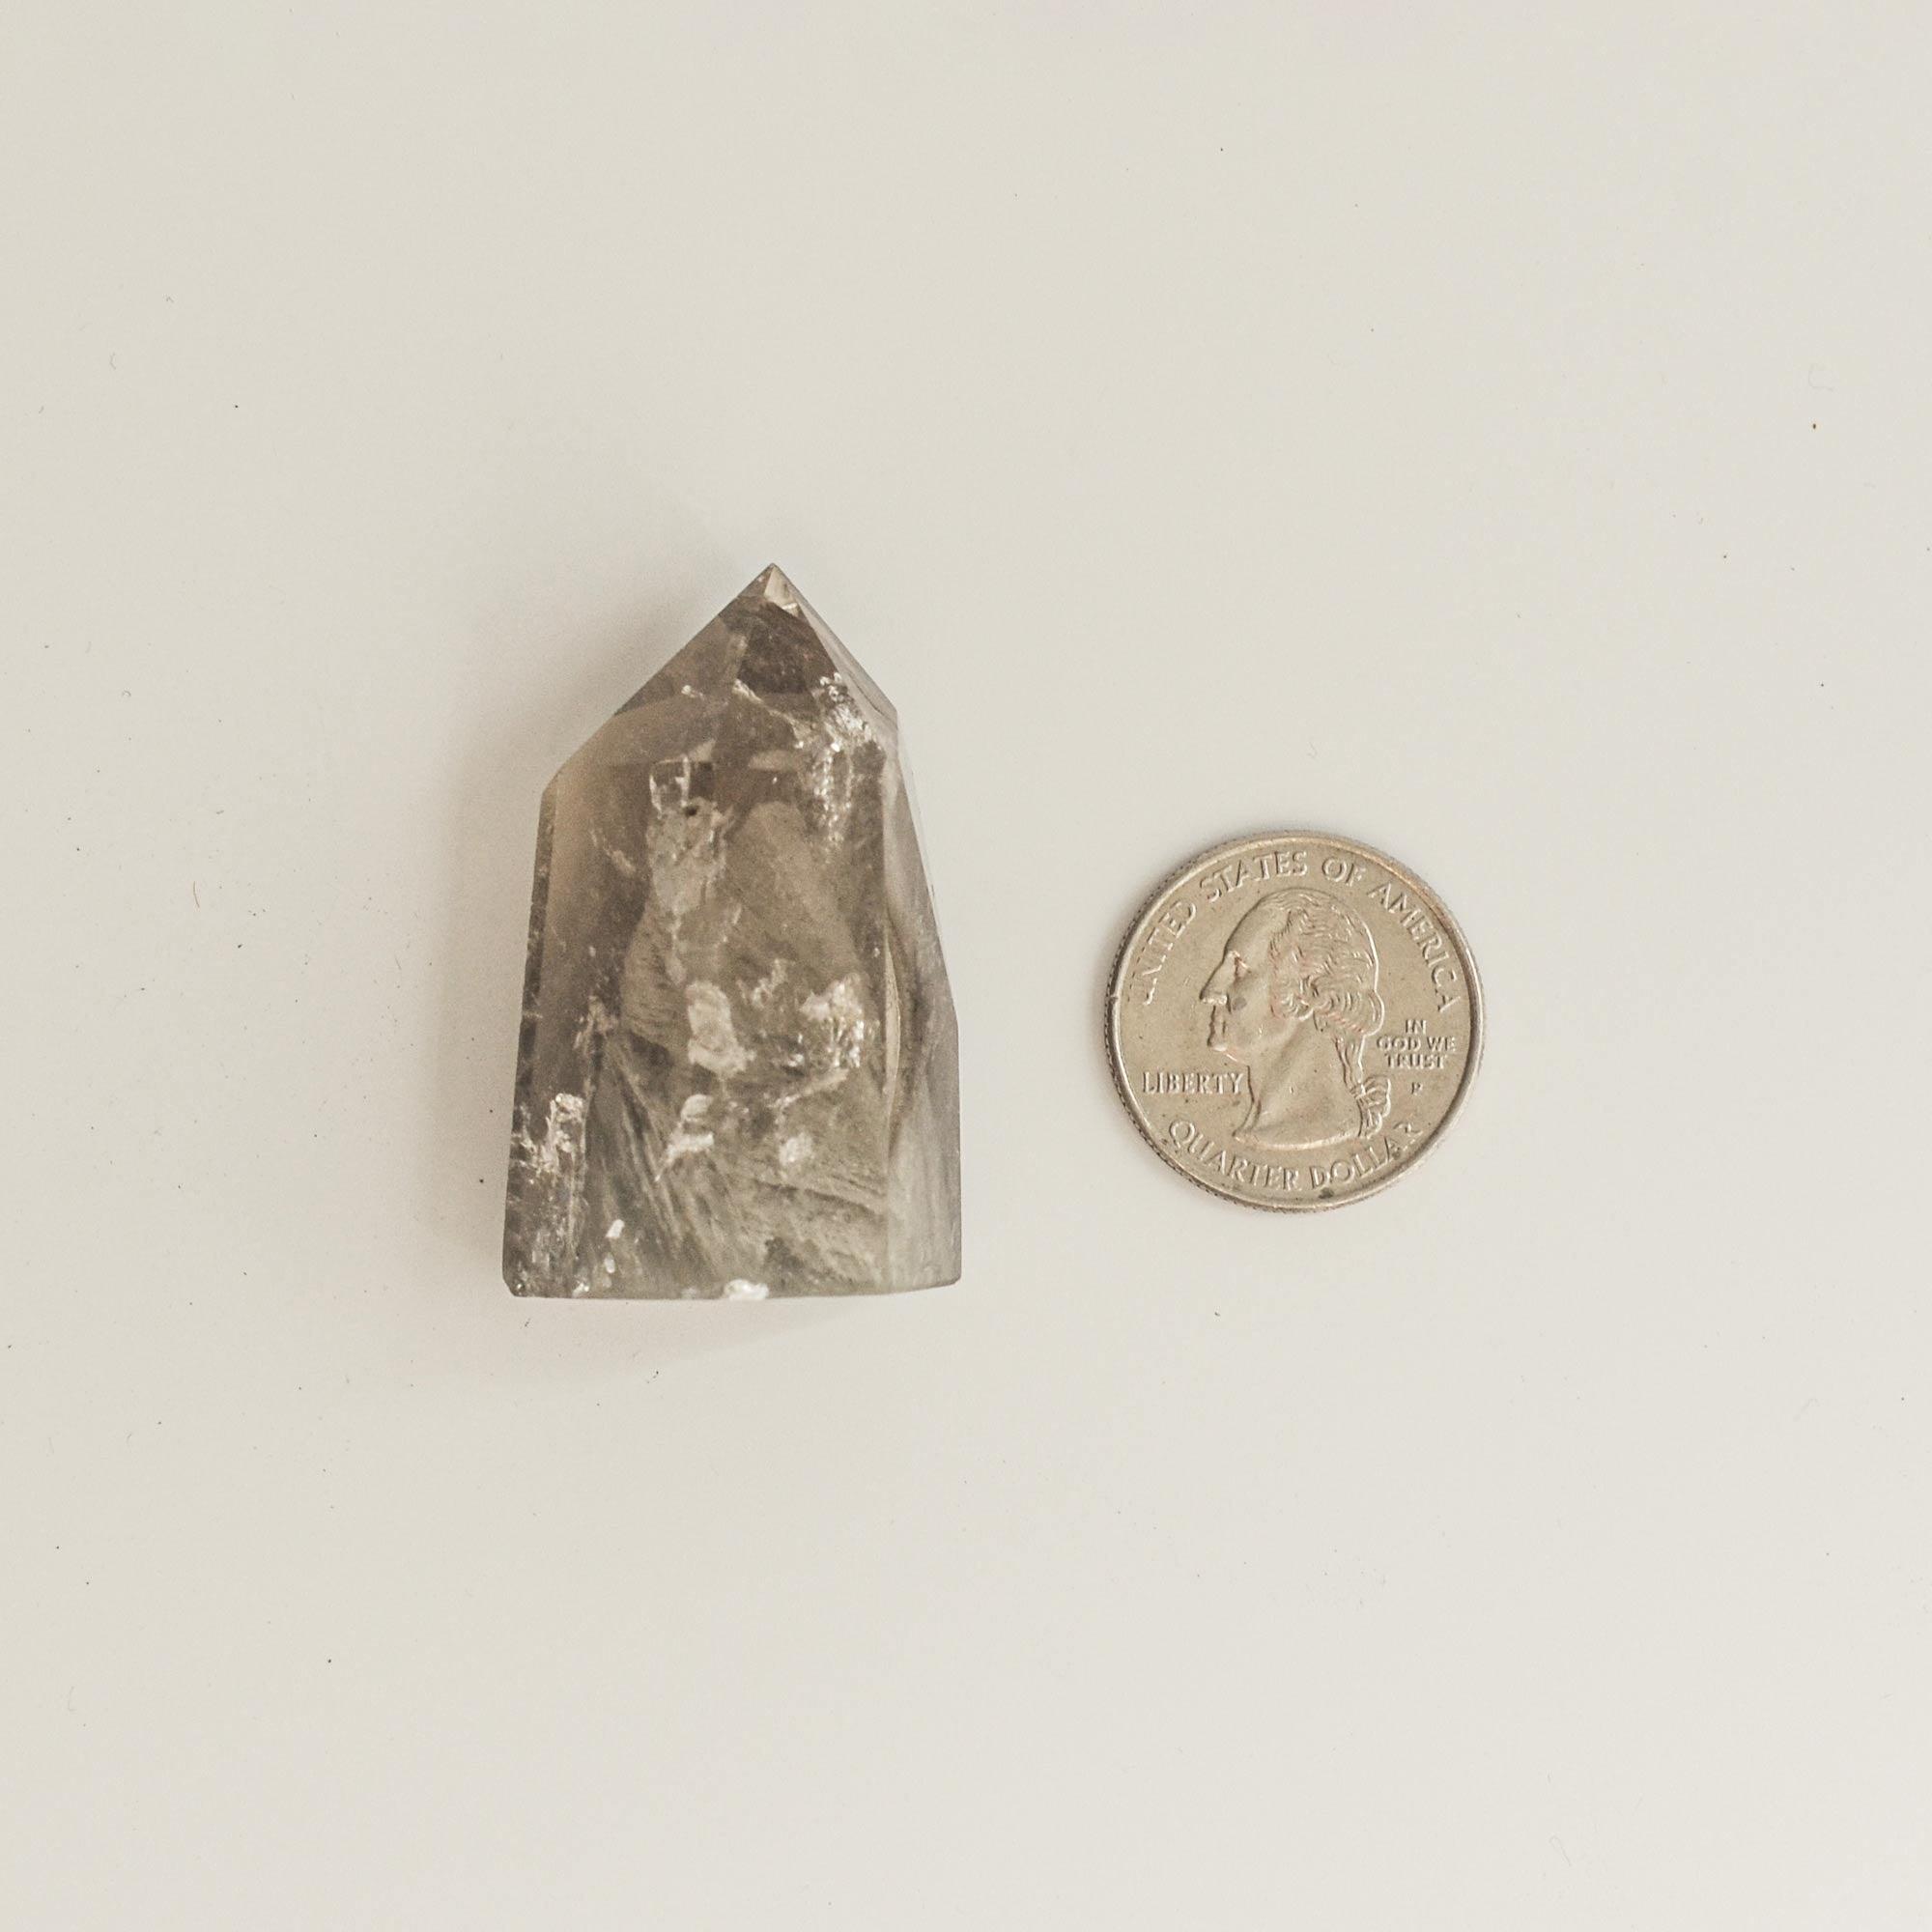 grey phantom quartz and quarter dollar coin